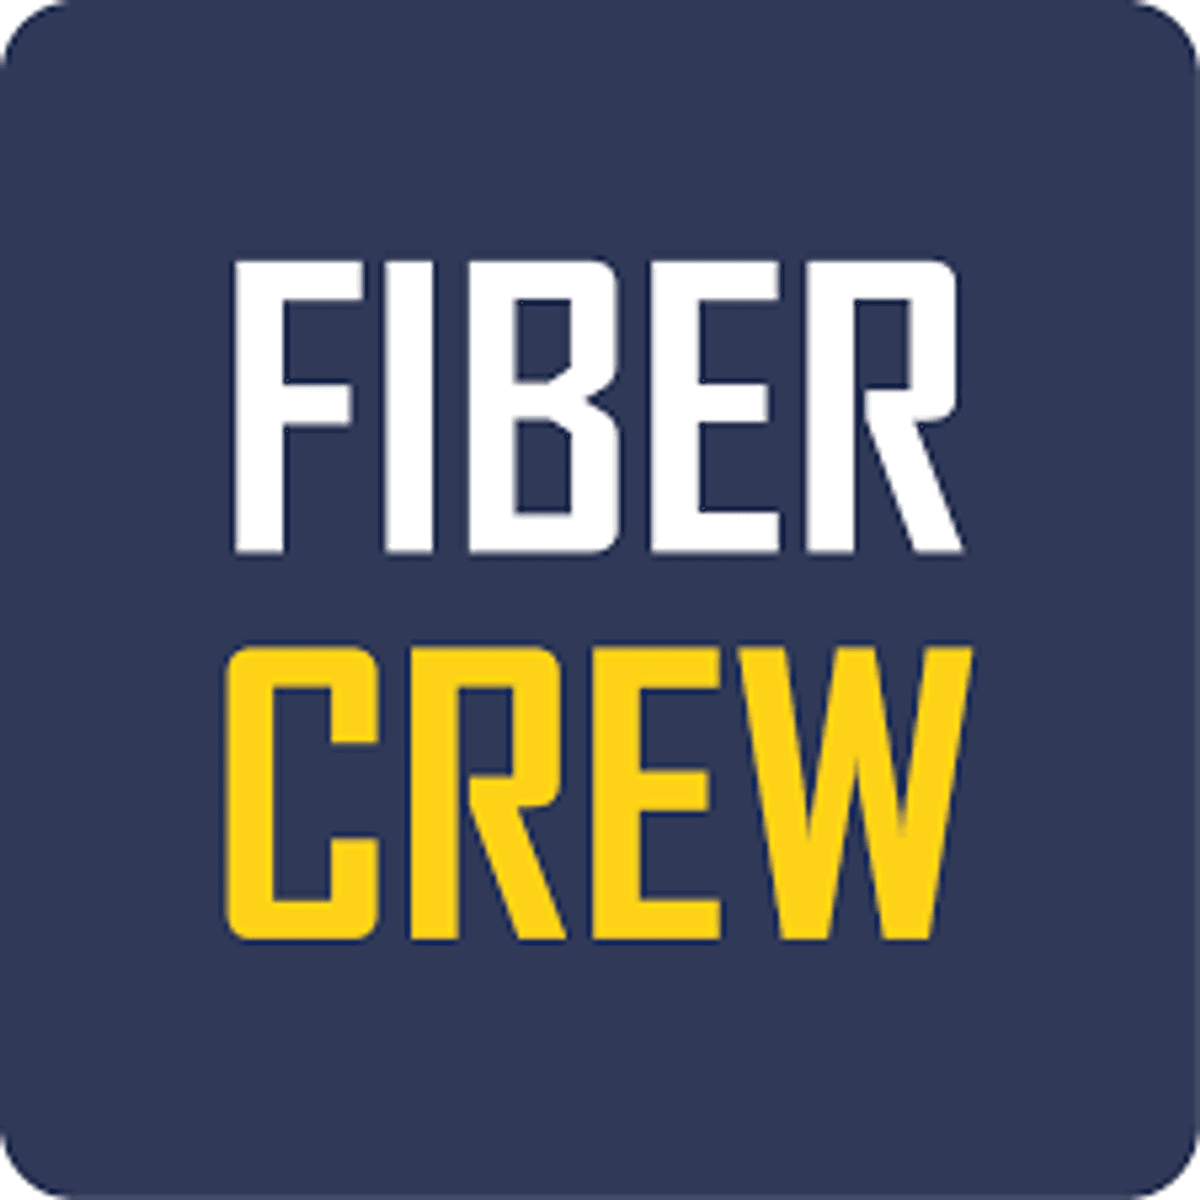 Fiber Crew legt 10Gb/s glasvezelnetwerk aan in Hilversum image